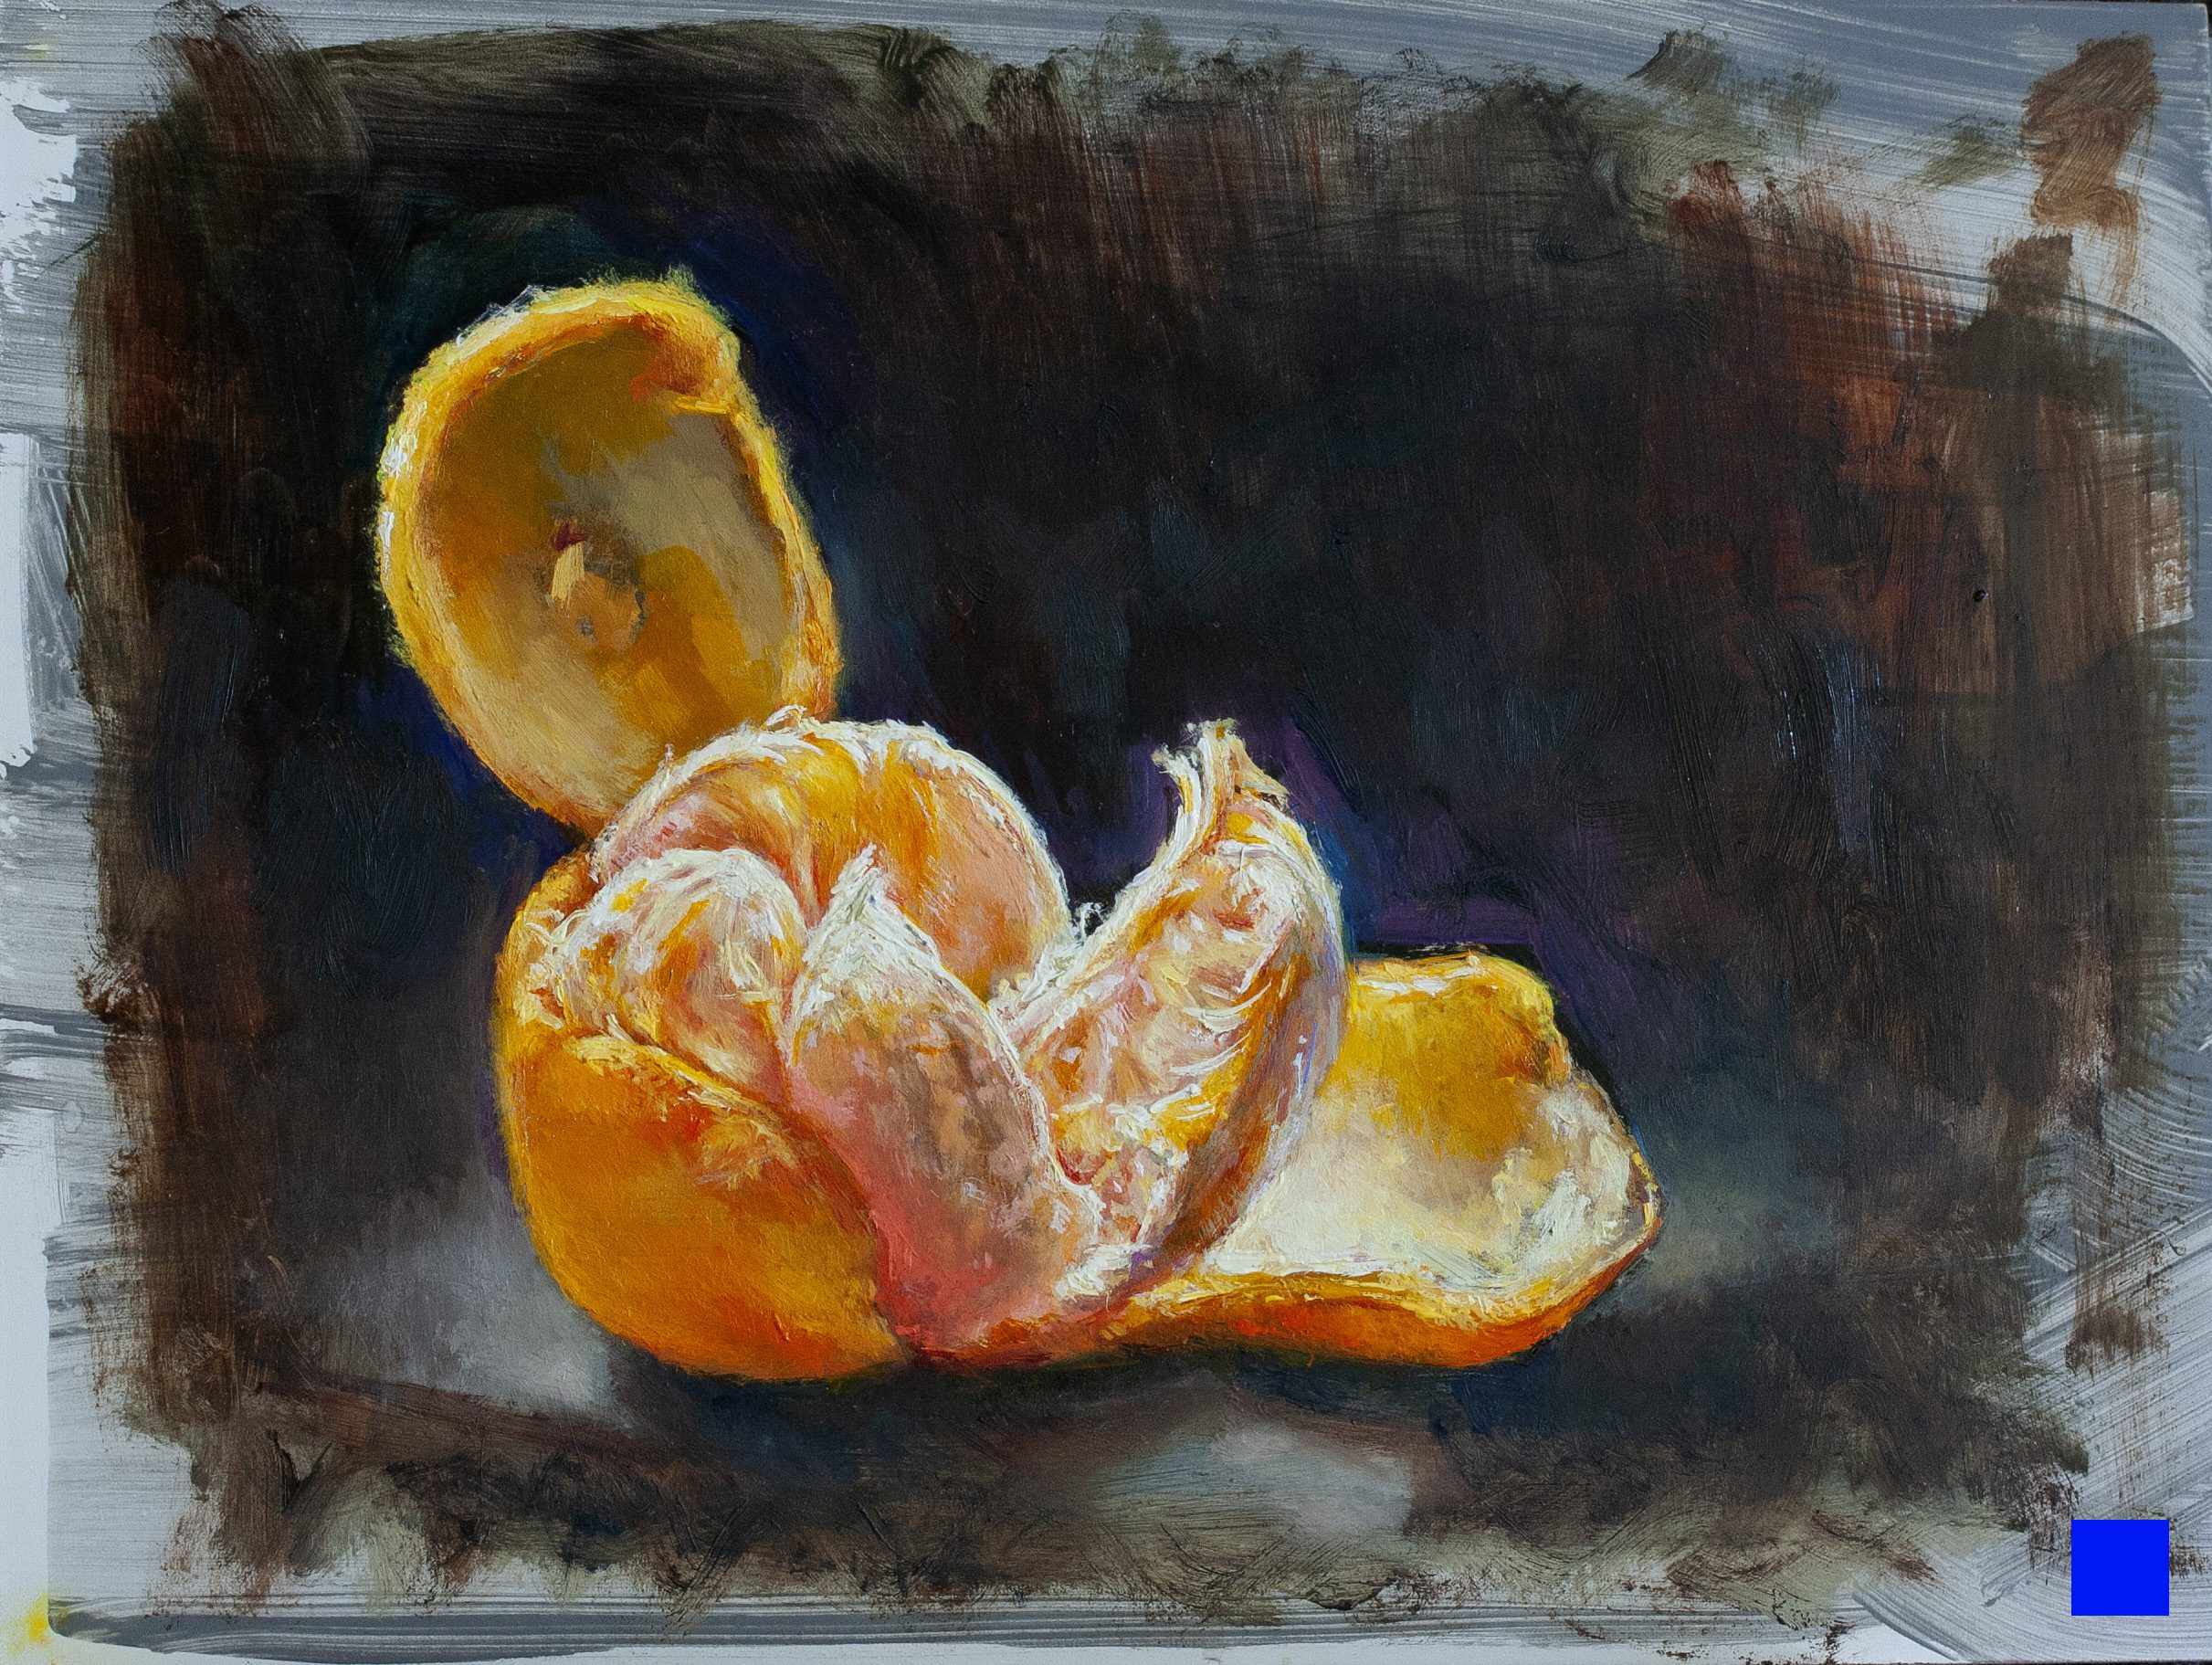 Professor Zeggert's painting Grapefruit Slice